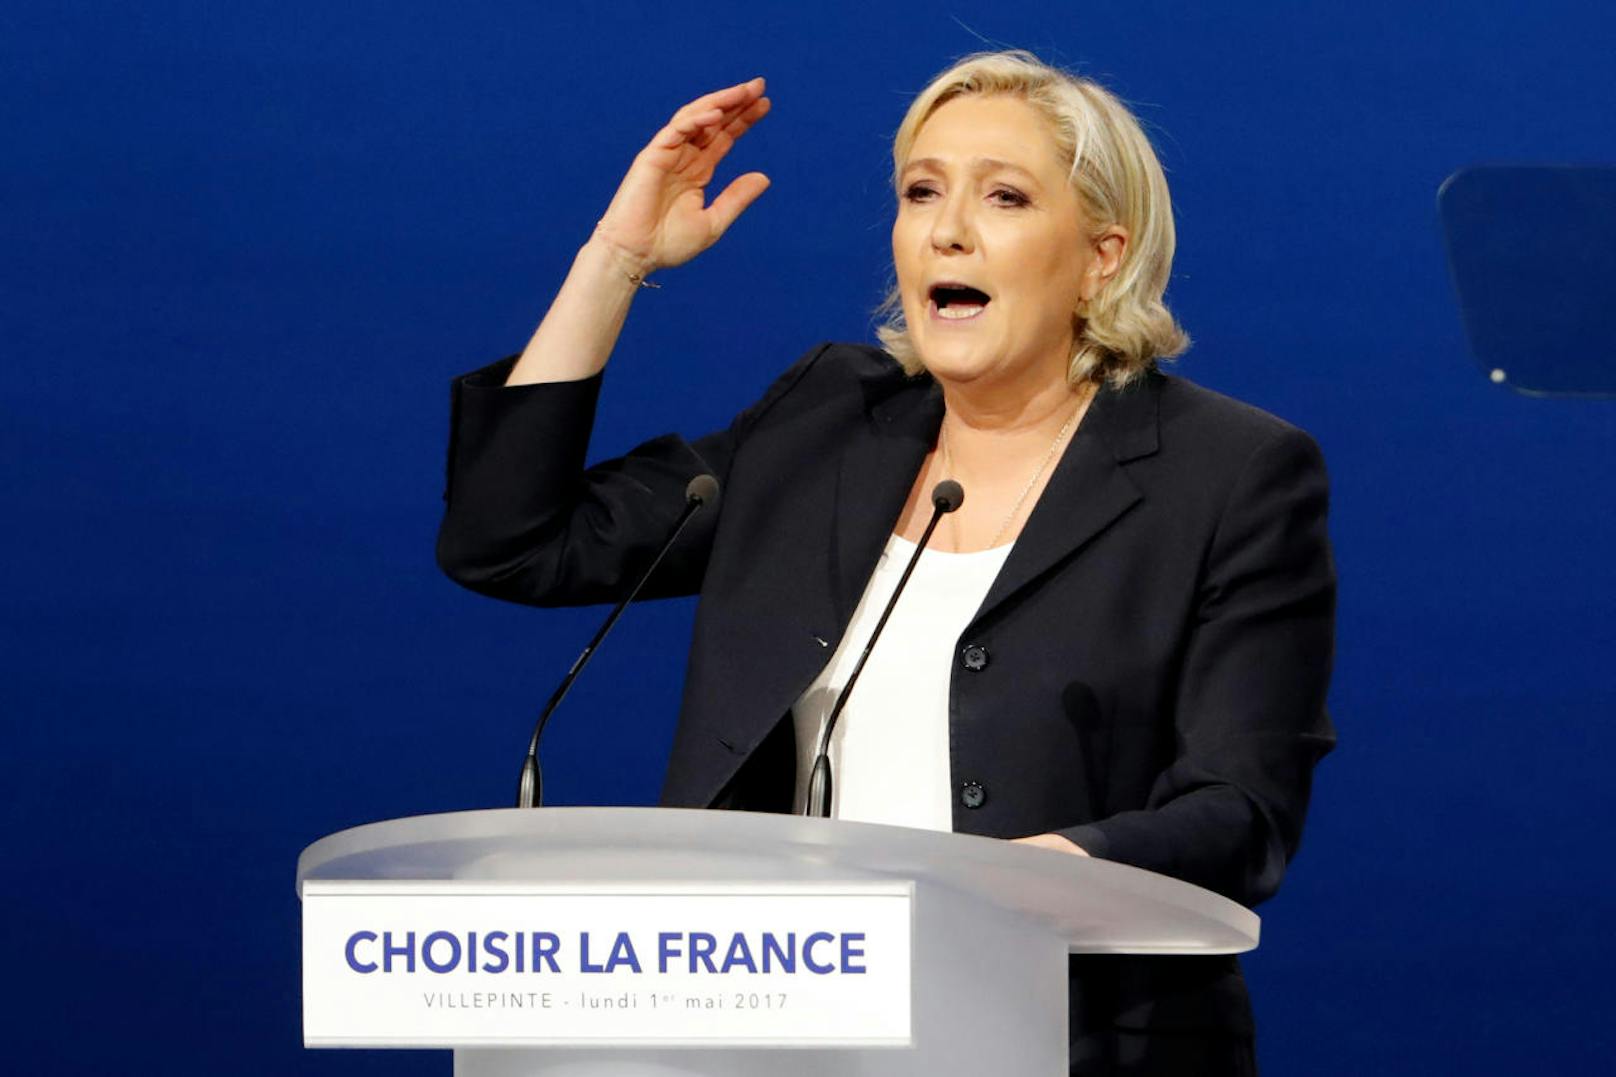 Wegen ihrer parlamentarischen Immunität als EU-Abgeordnete konnte sie dazu nicht gezwungen werden. Le Pen war 2009 bis 2017 Abgeordnete des EU-Parlaments.